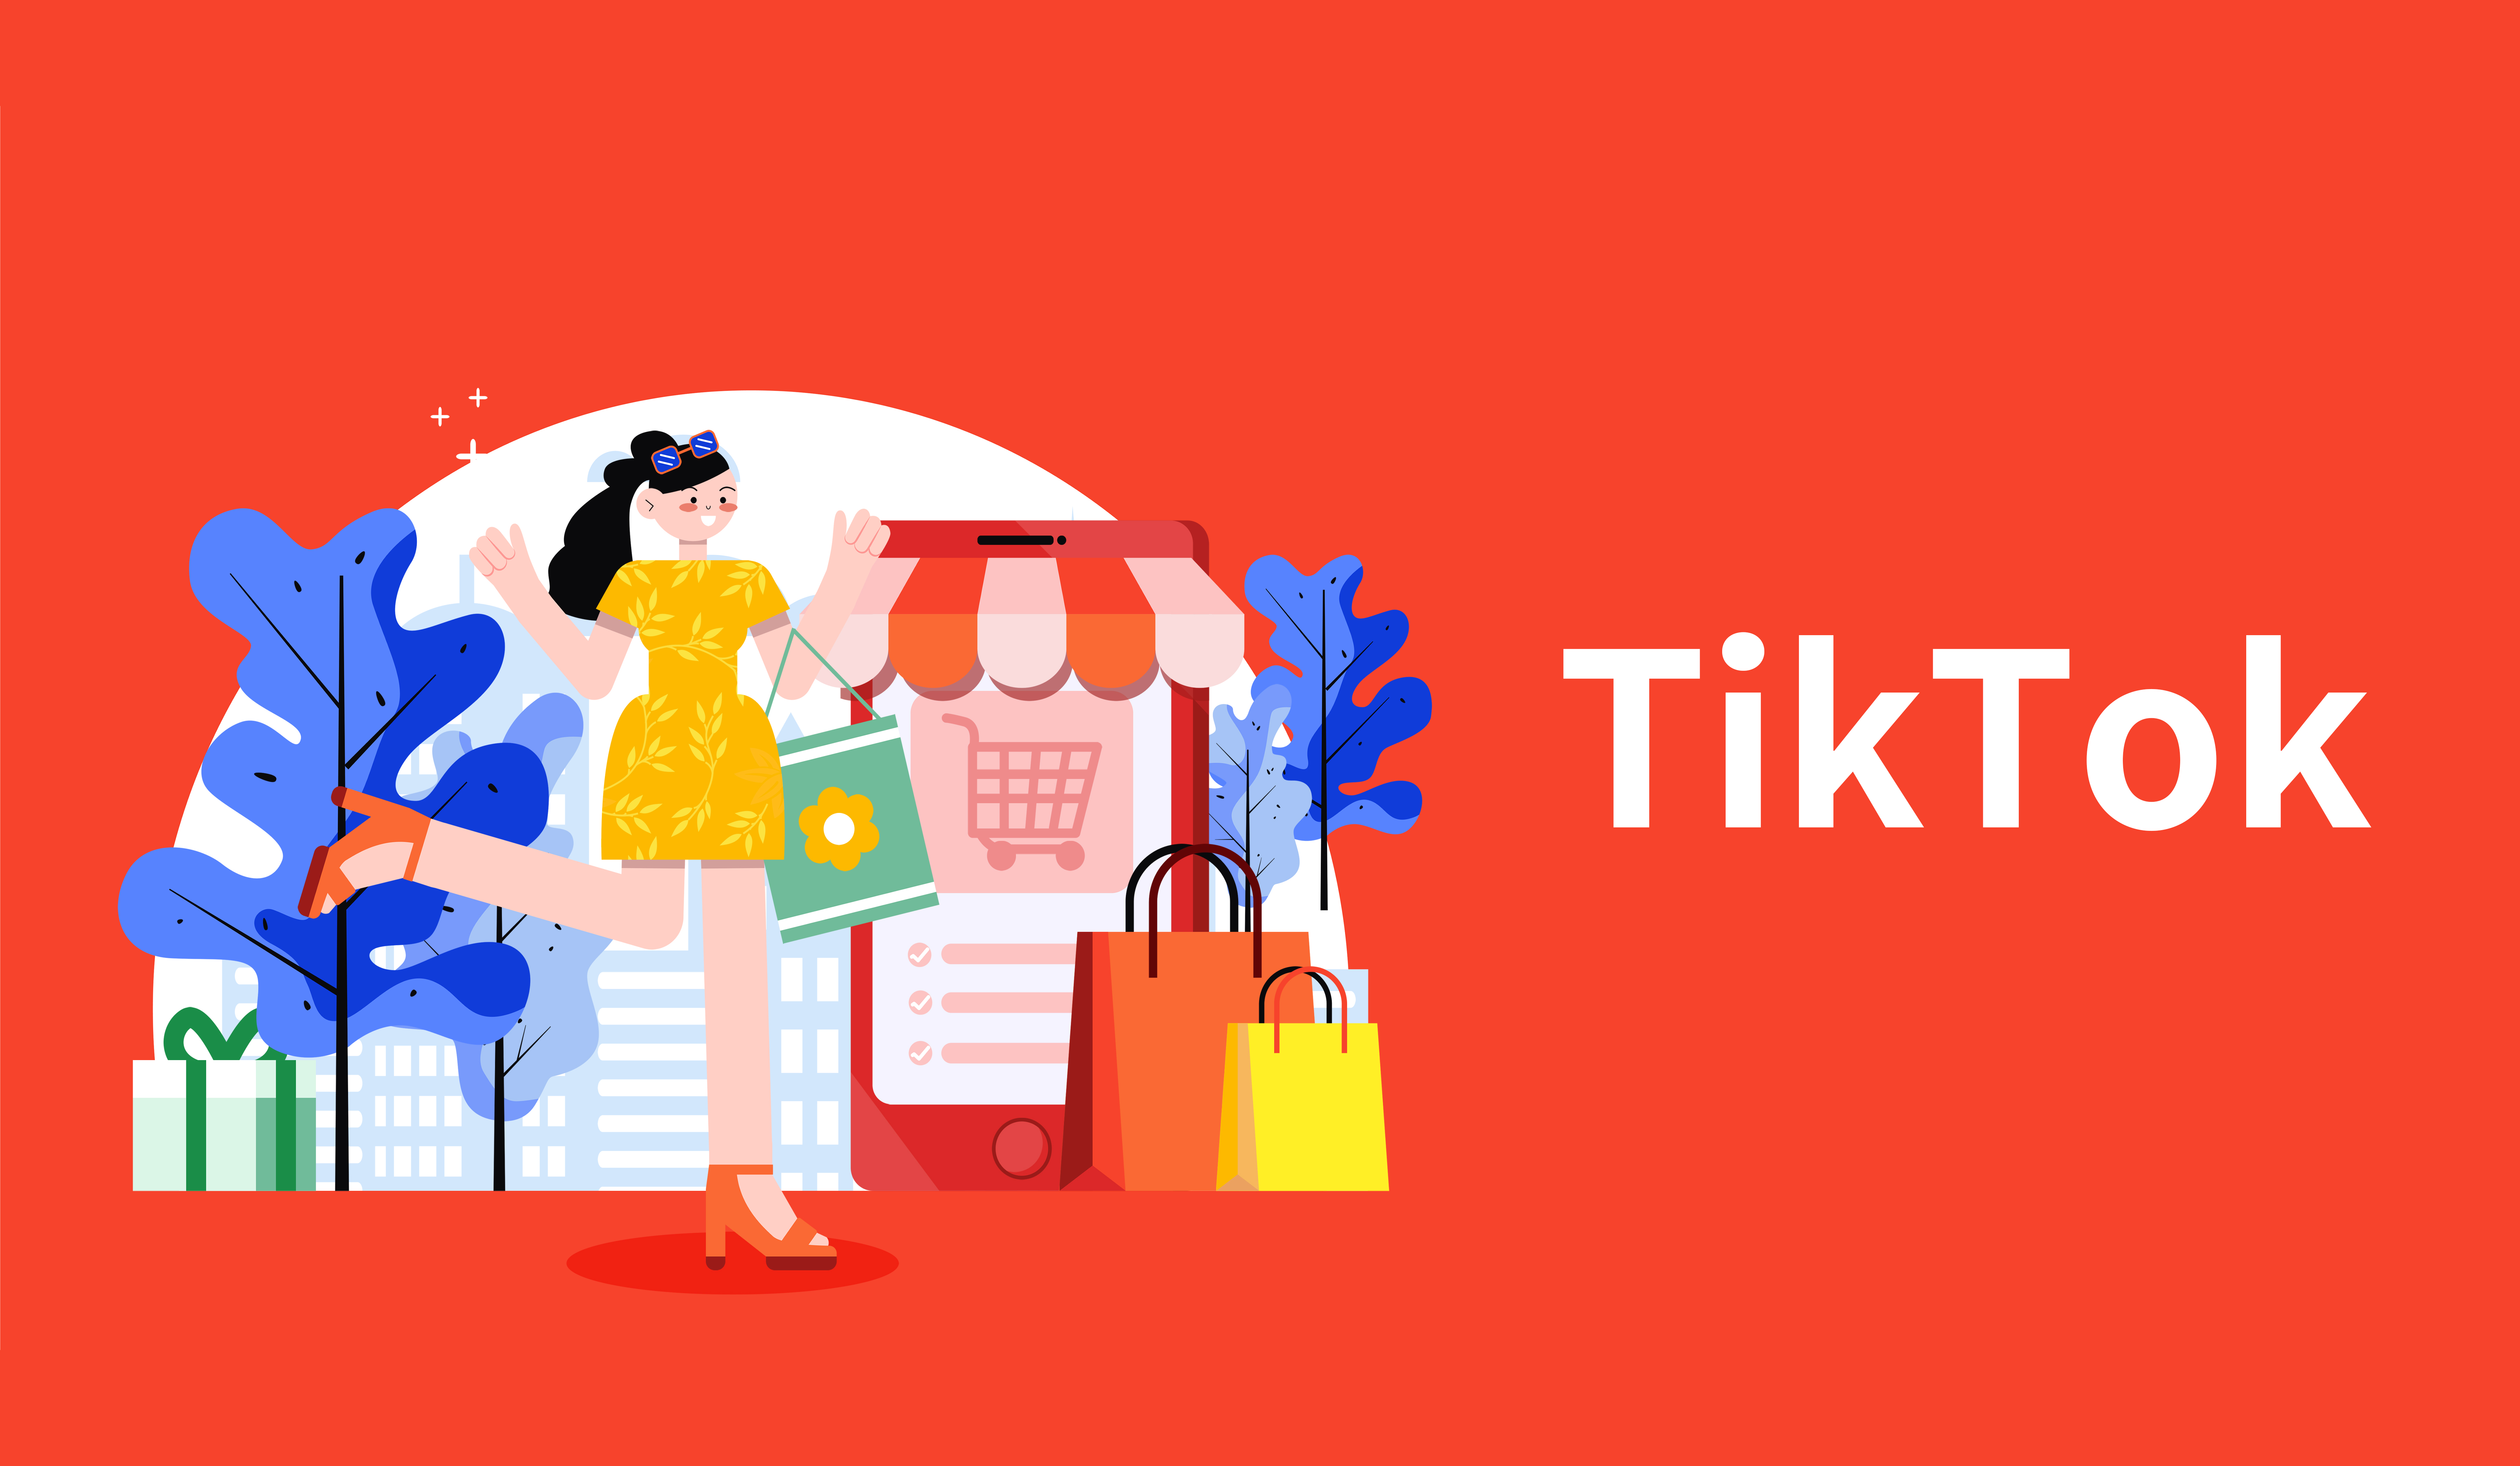 TikTok Shop菲律宾卖家数量超200万